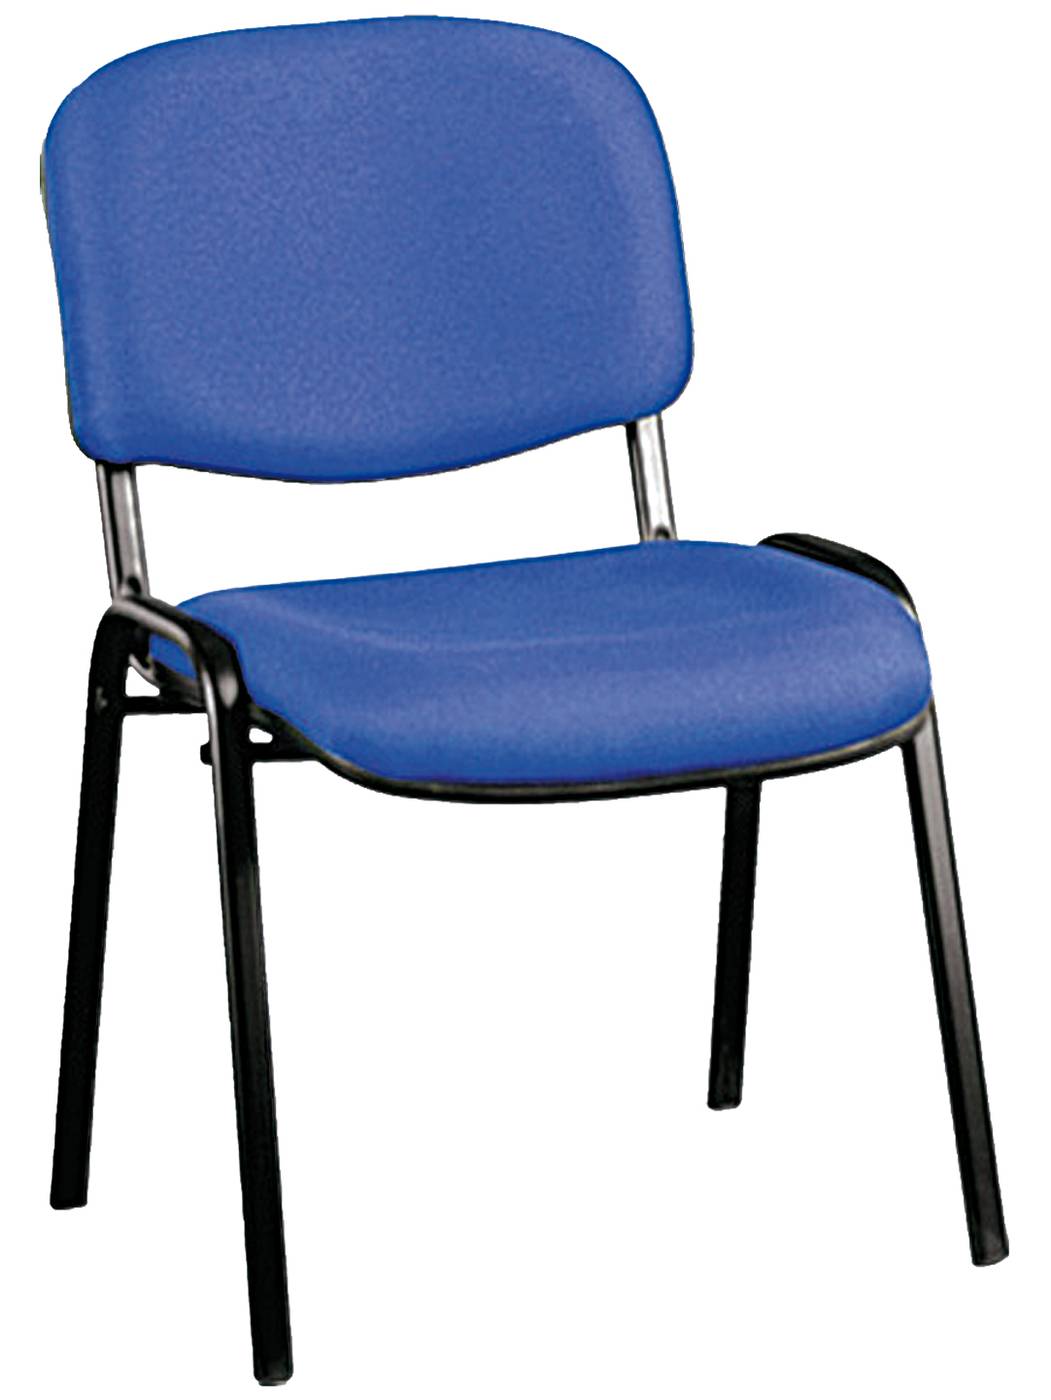 Silla de oficina apilable, con asiento y respaldo acolchado tapizado en azul